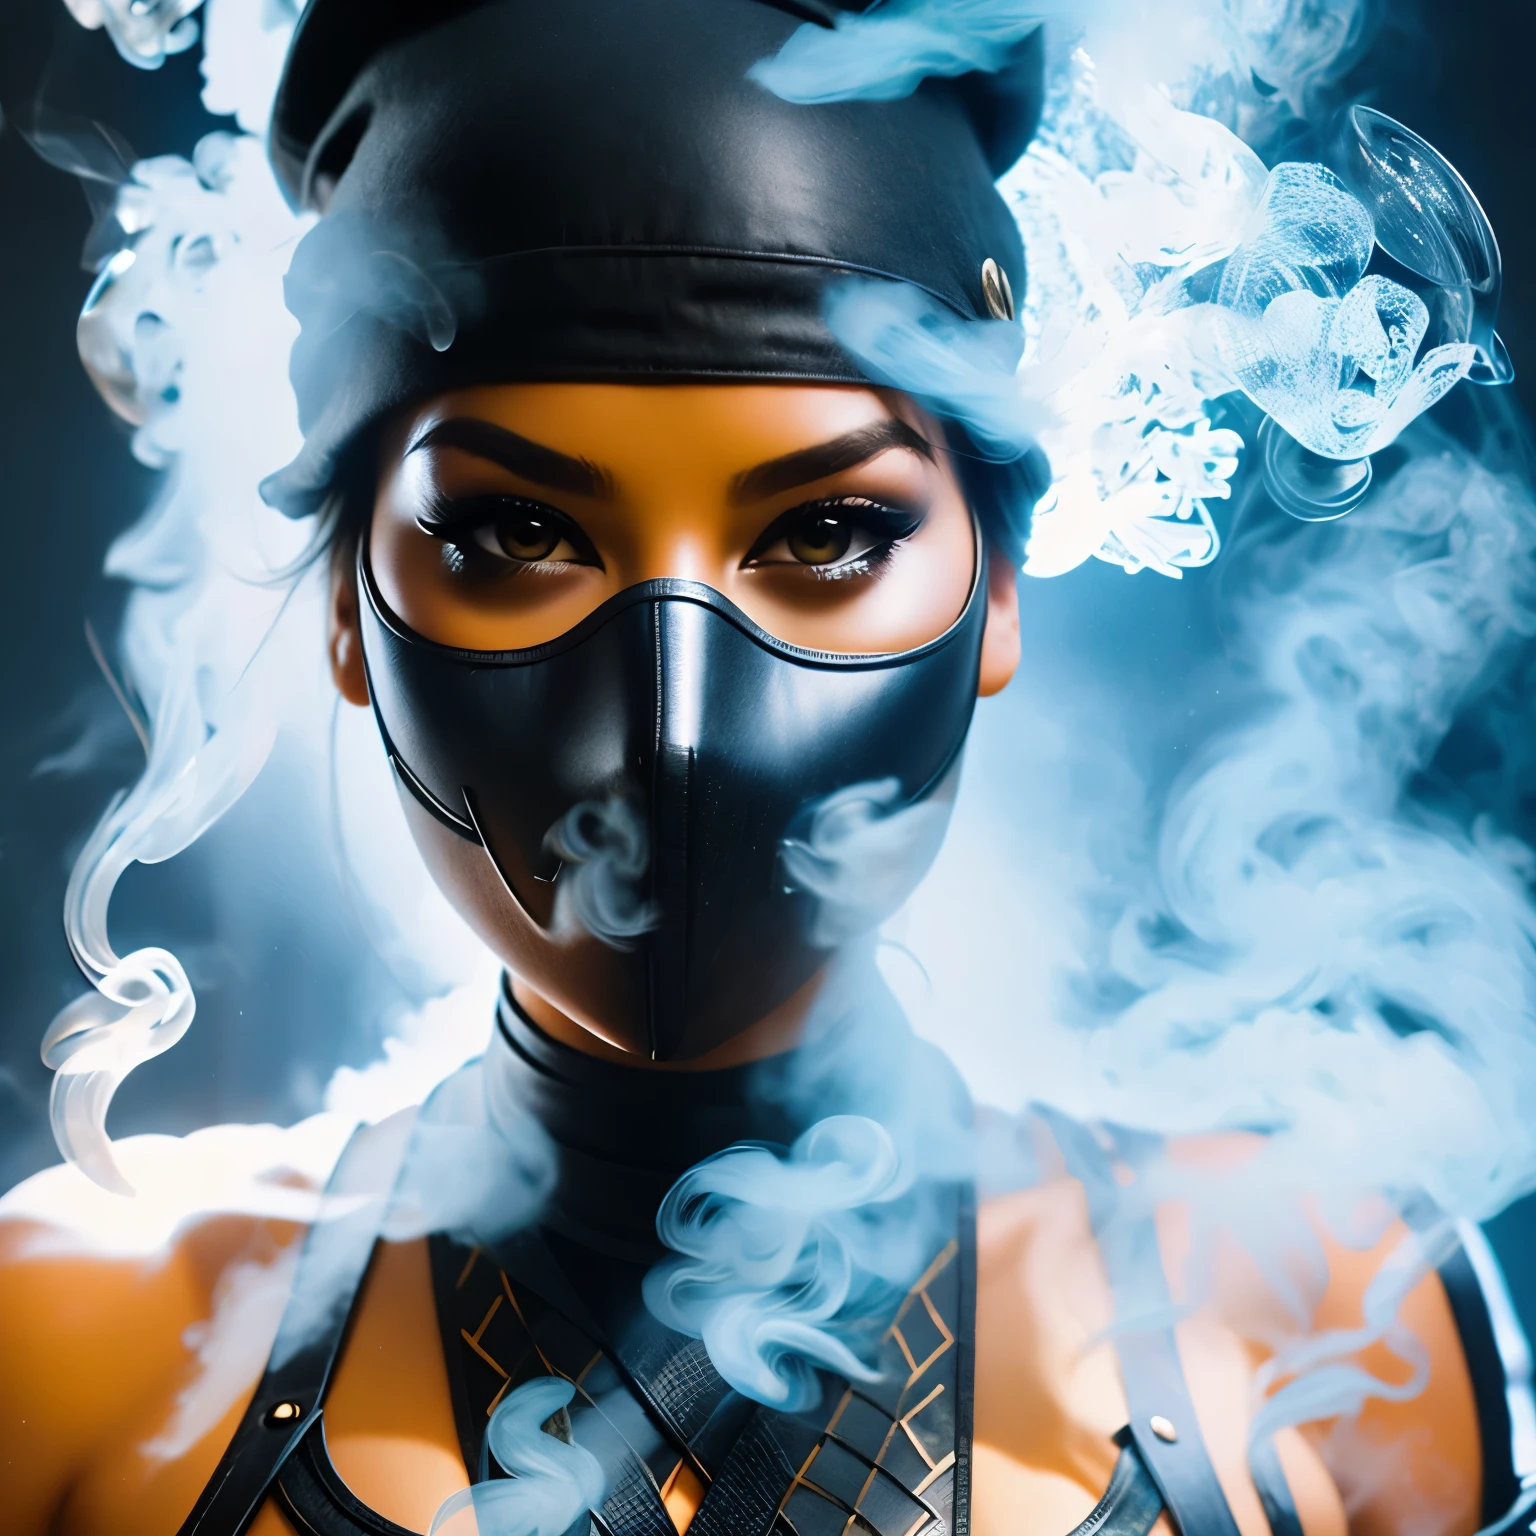 Crie uma foto ultradetalhada de uma figura totalmente feita de fumaça no formato de Smoking Girl, ninja, (figura fantasmagórica) vista frontal, efeitos de movimento, fumaça colorida, Luzes de estúdio, Foco Ultra Nítido, tiro em alta velocidade, cores suaves, Ultra HD, 16K